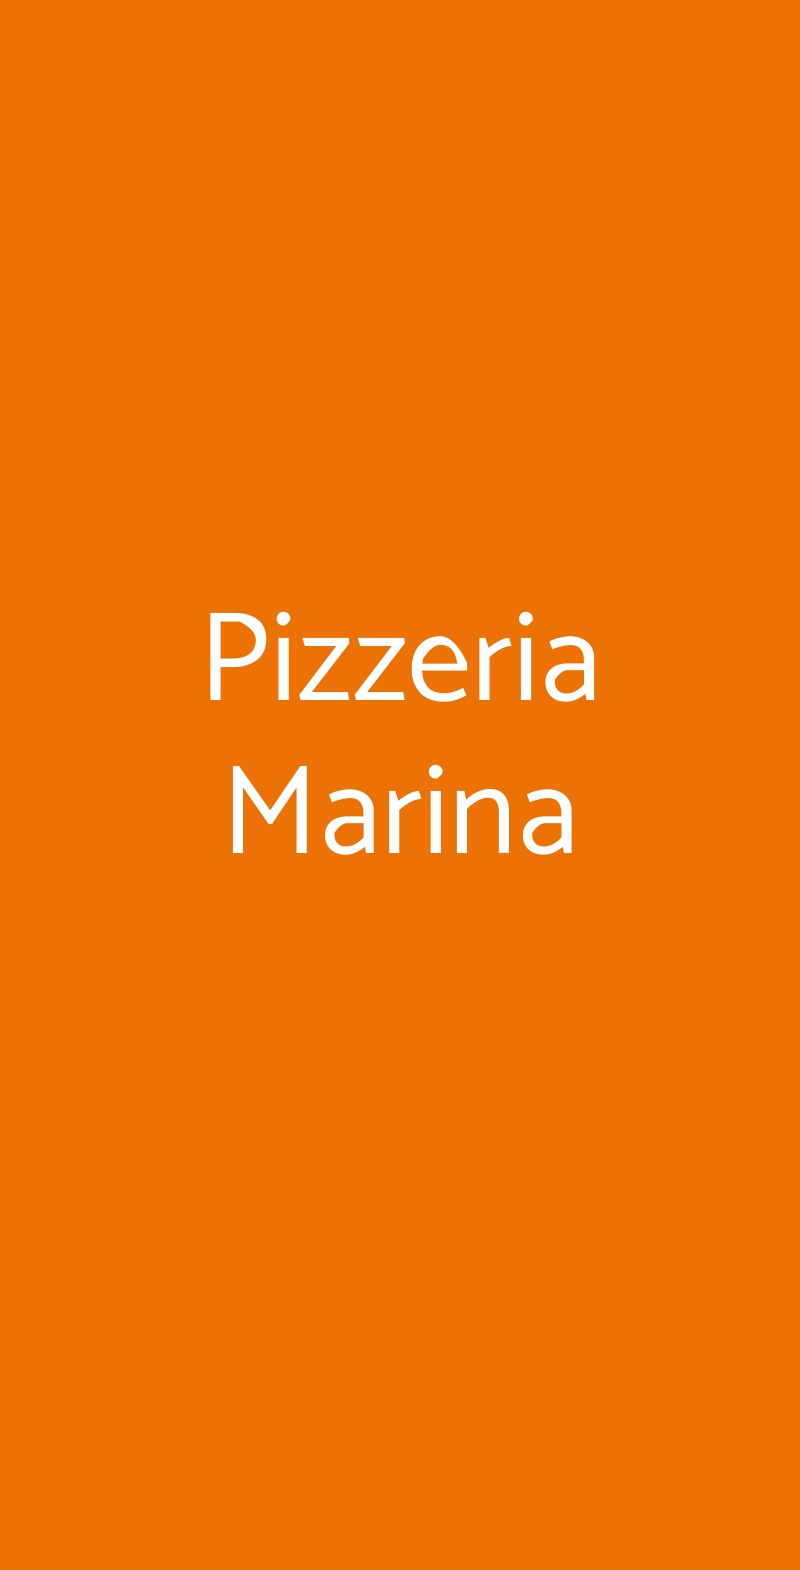 Pizzeria Marina Milano menù 1 pagina